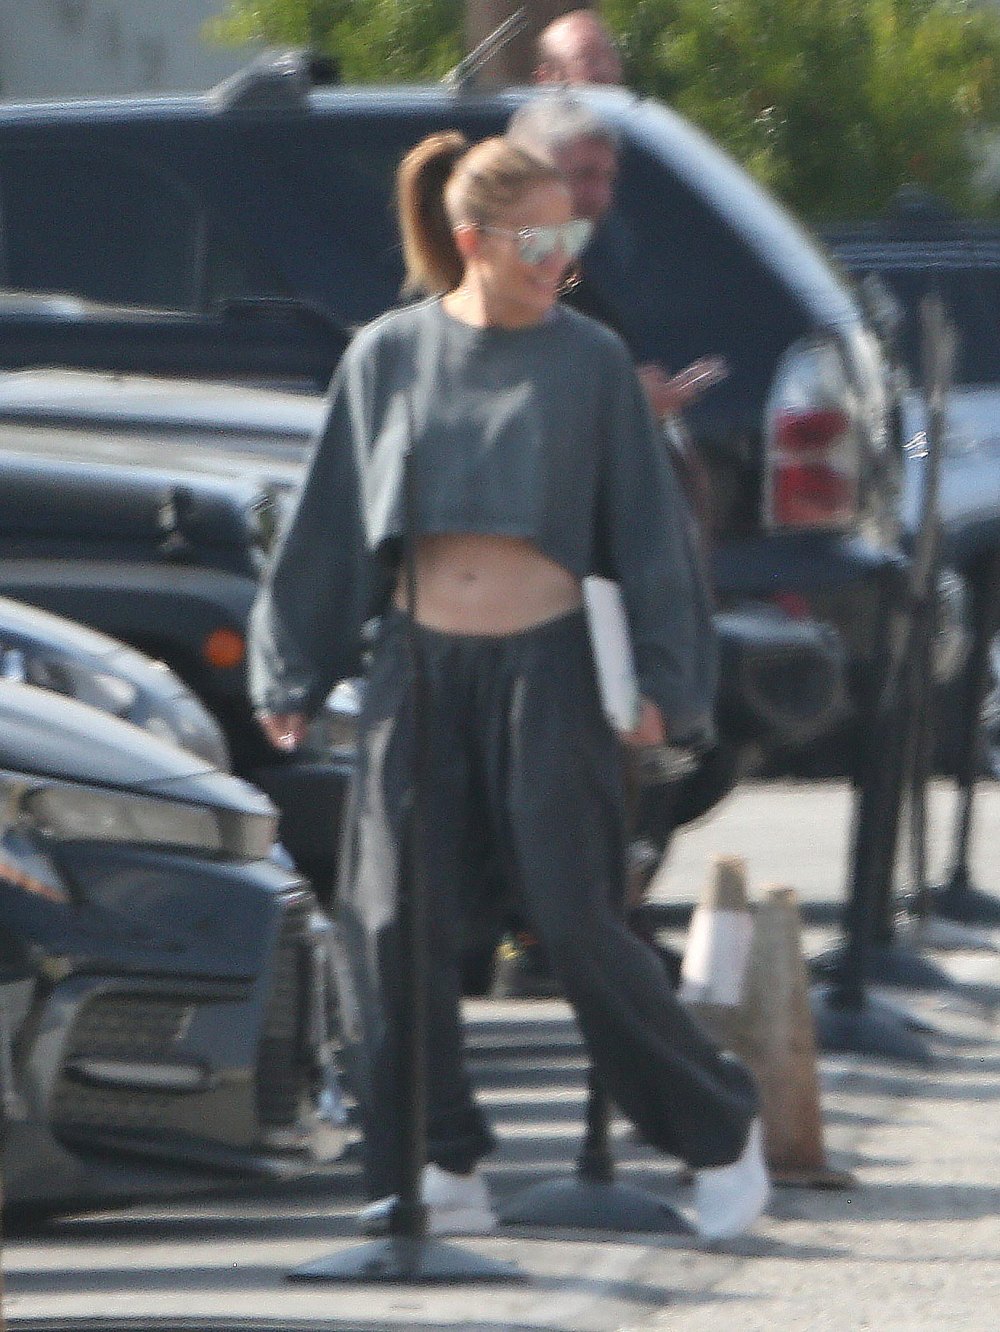 Jennifer Lopez sorri durante passeio público em meio a problemas com Ben Affleck